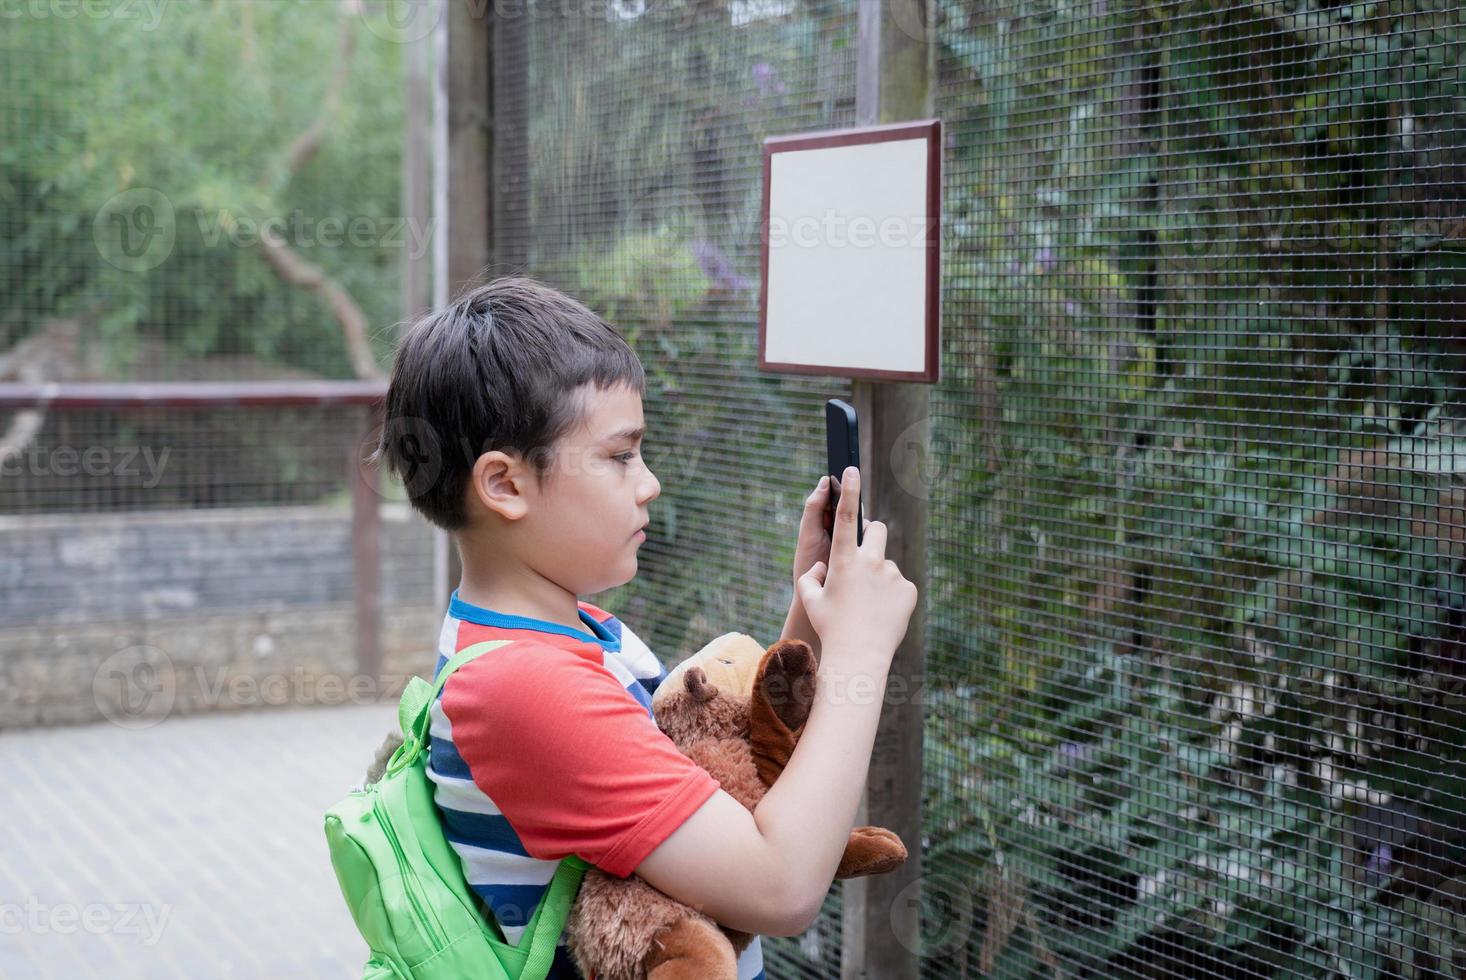 skola unge använder sig av mobil telefon tar Foto av djur- i de bur i de odla, barn pojke inlärning handla om vilda djur och växter i de Zoo, Lycklig unge har roligt med djur safari parkera på värma sommar dag